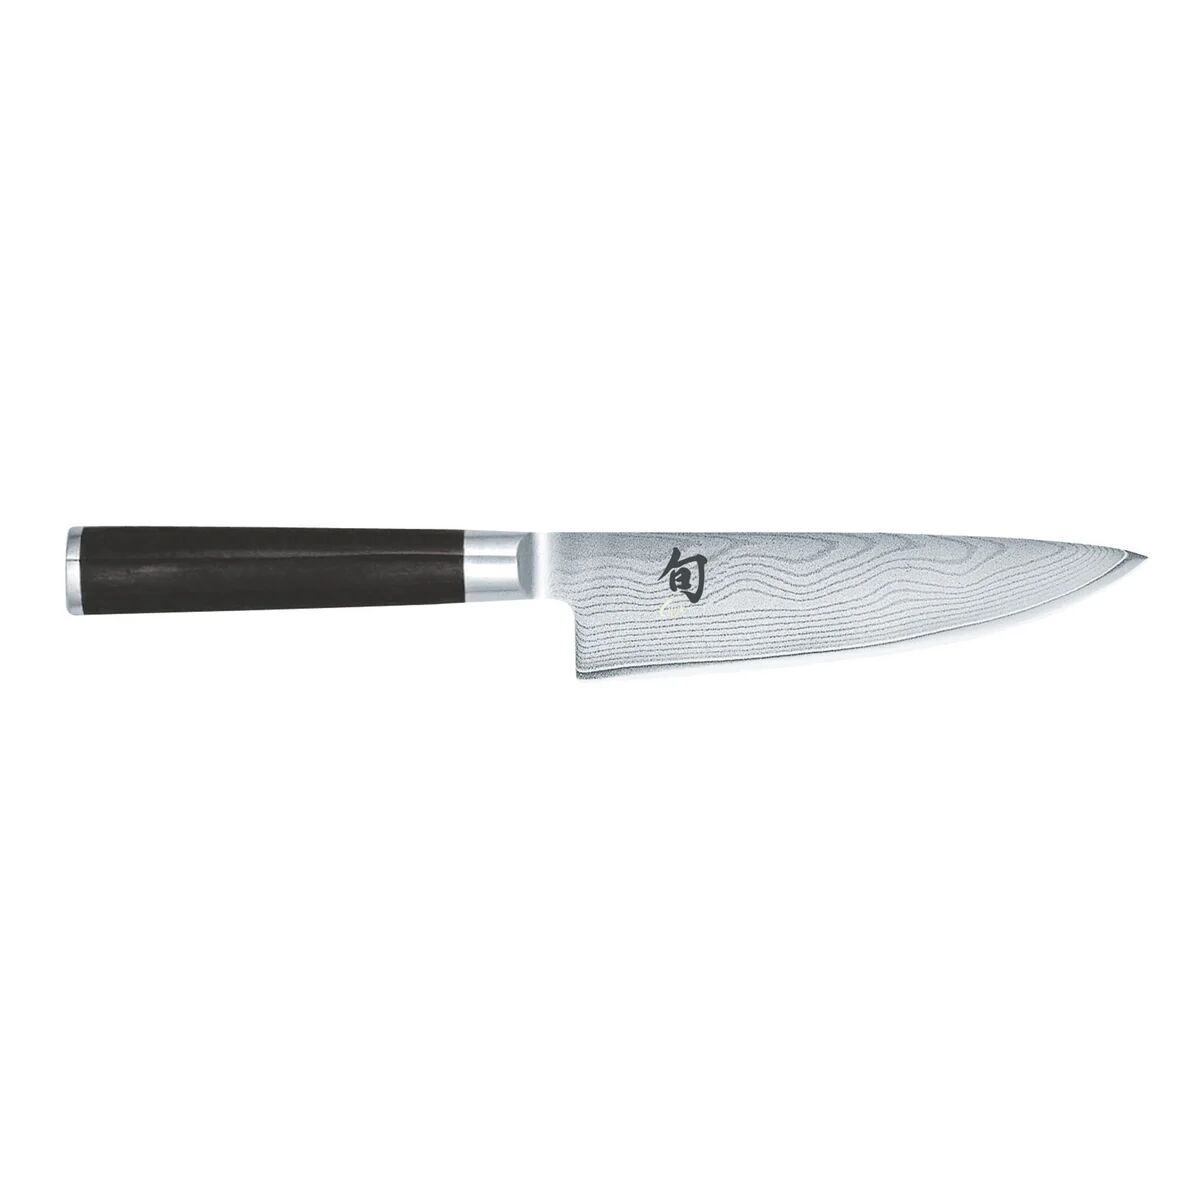 Kai Shun Classic kokkekniv 15 cm